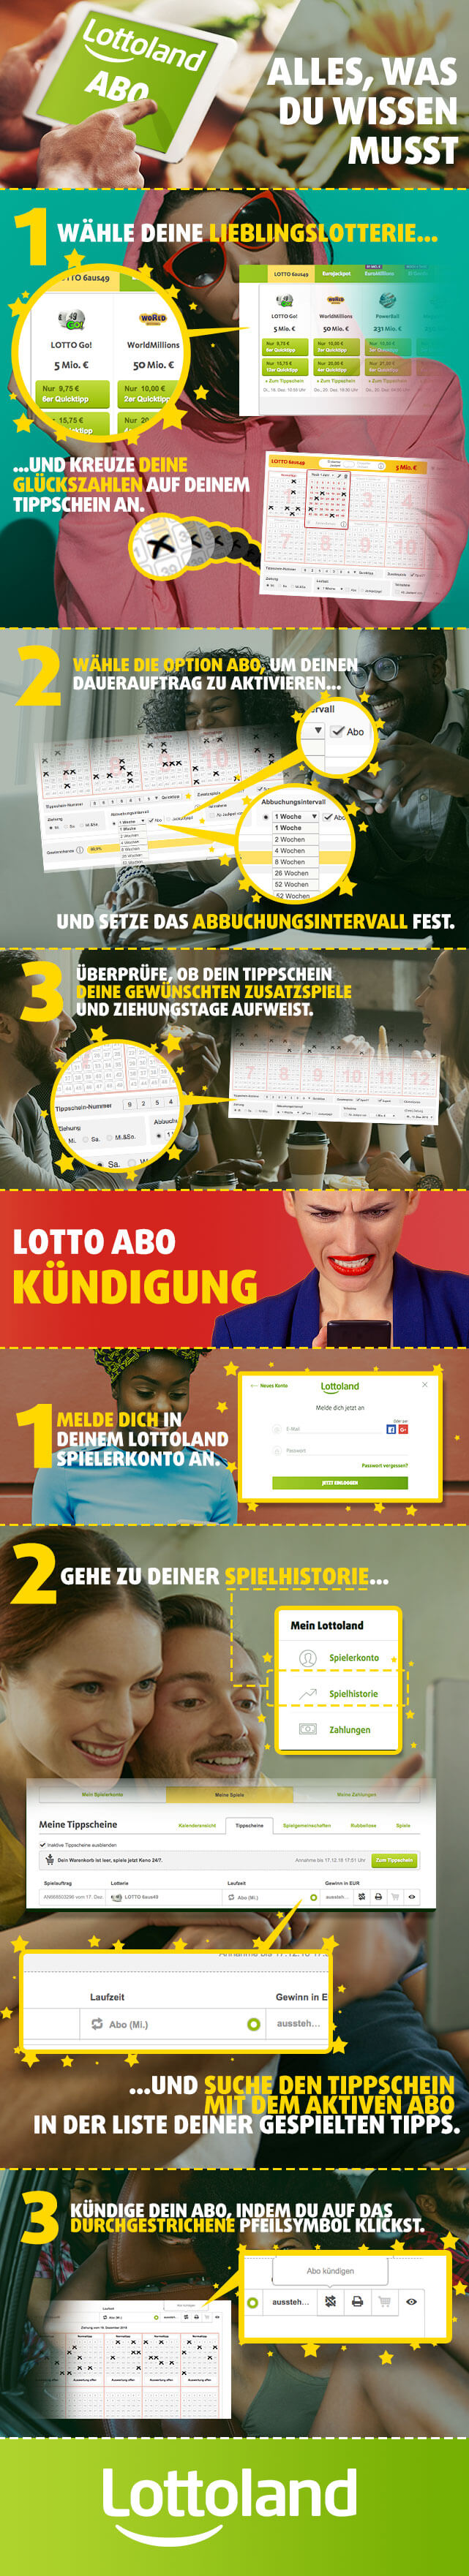 Lotto PreiserhГ¶hung